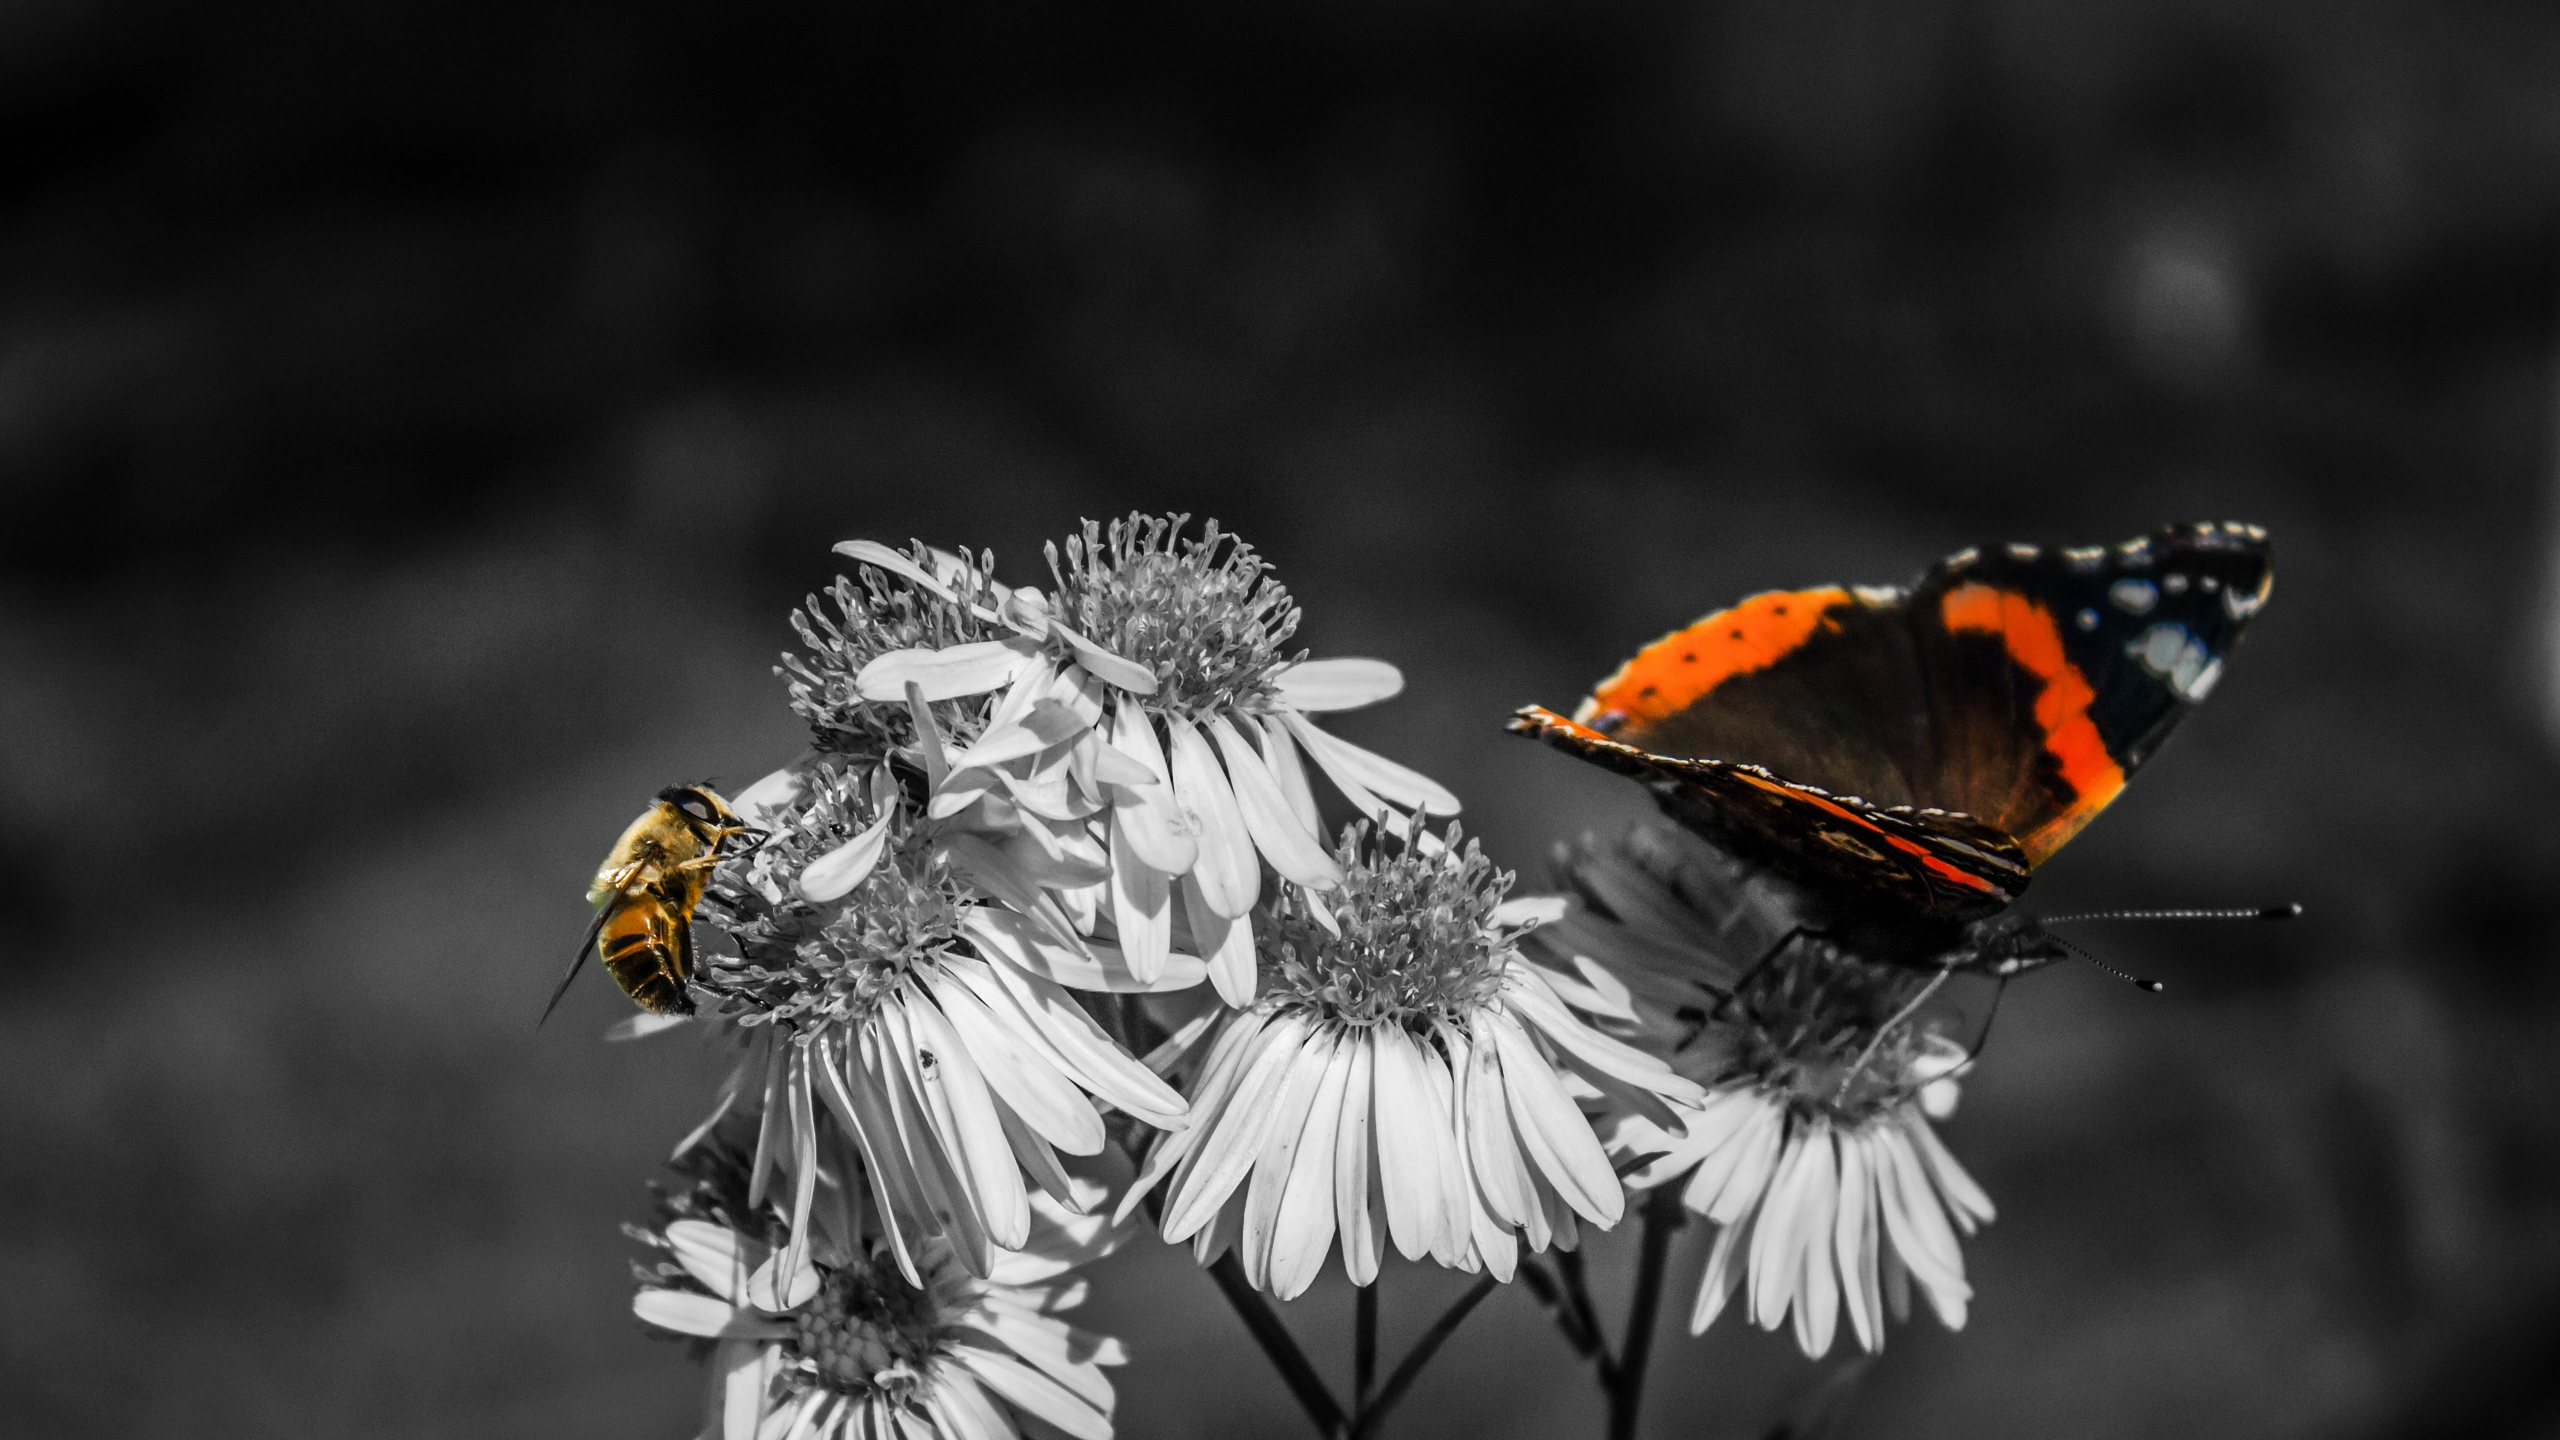 Скачать обои бесплатно Природа, Цветок, Насекомое, Пчела, Бабочка, Листва, Фотографии картинка на рабочий стол ПК